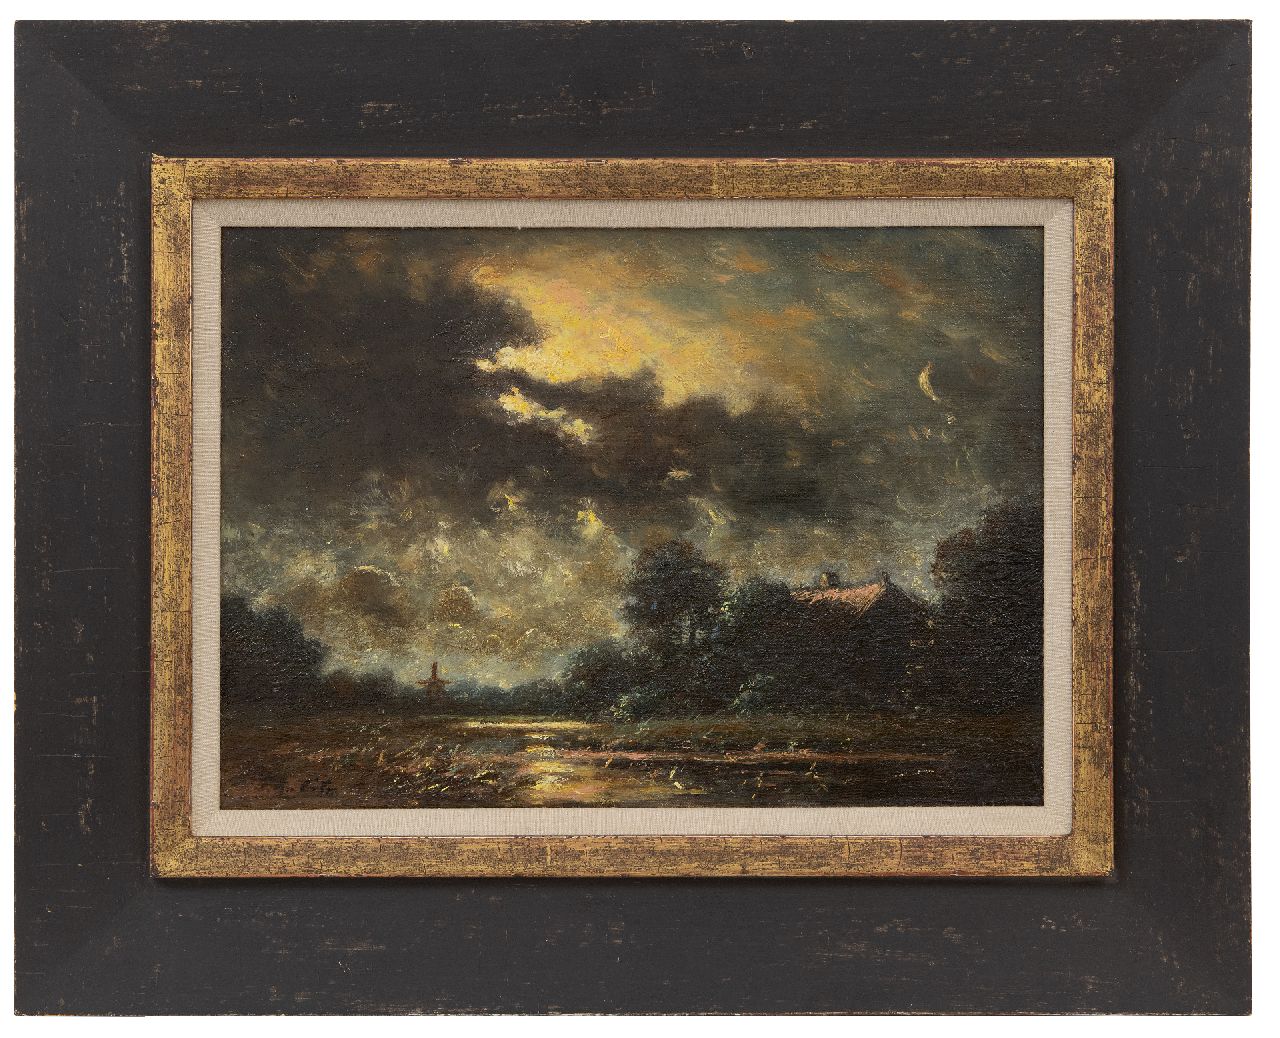 Cate P. ten | Pieter ten Cate | Schilderijen te koop aangeboden | Maanlicht, olieverf op doek 26,3 x 37,2 cm, gesigneerd linksonder